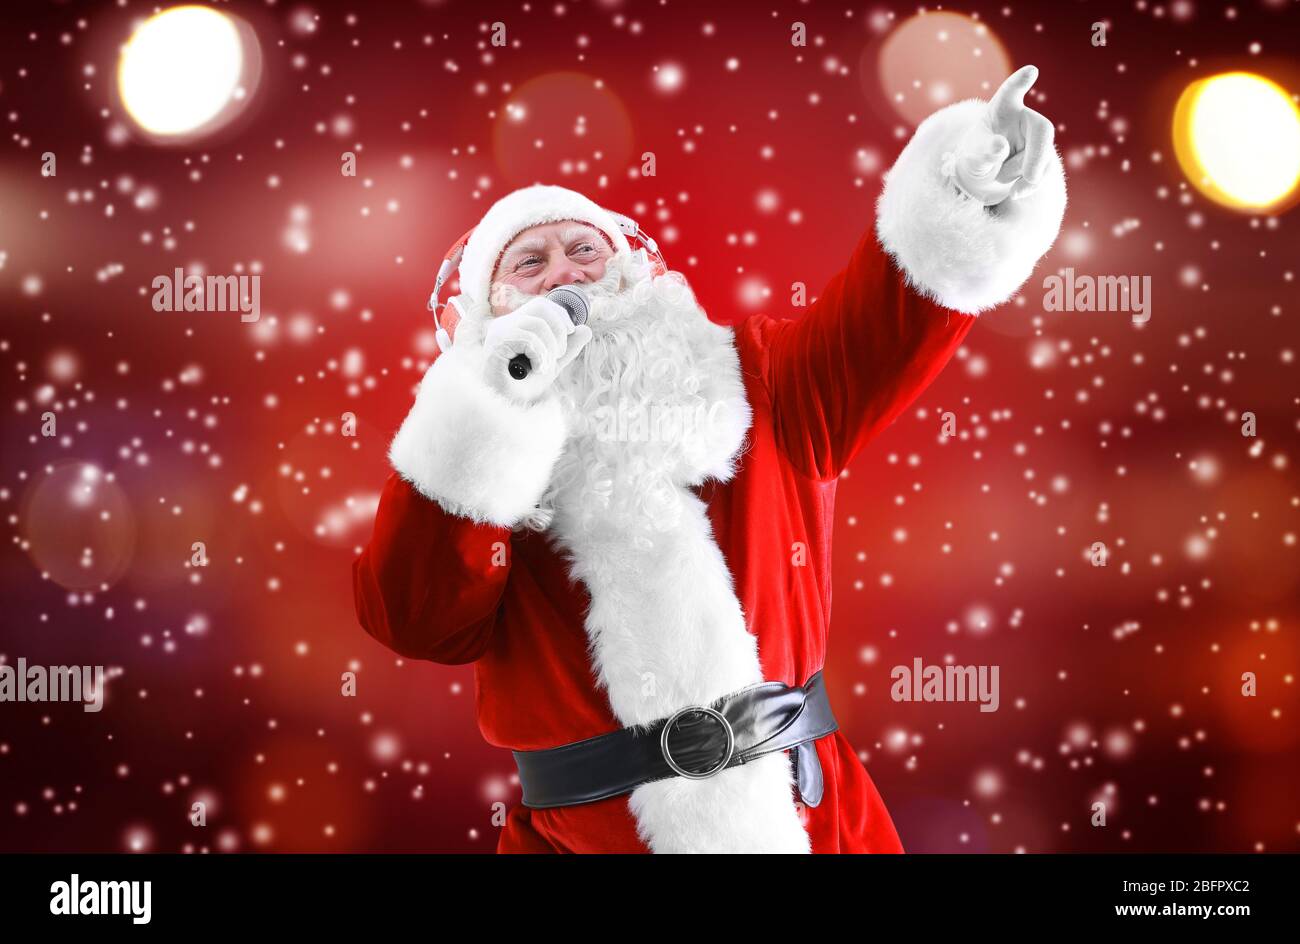 Le Père Noël chante des chansons sur fond de couleur. Noël et nouvel an Banque D'Images